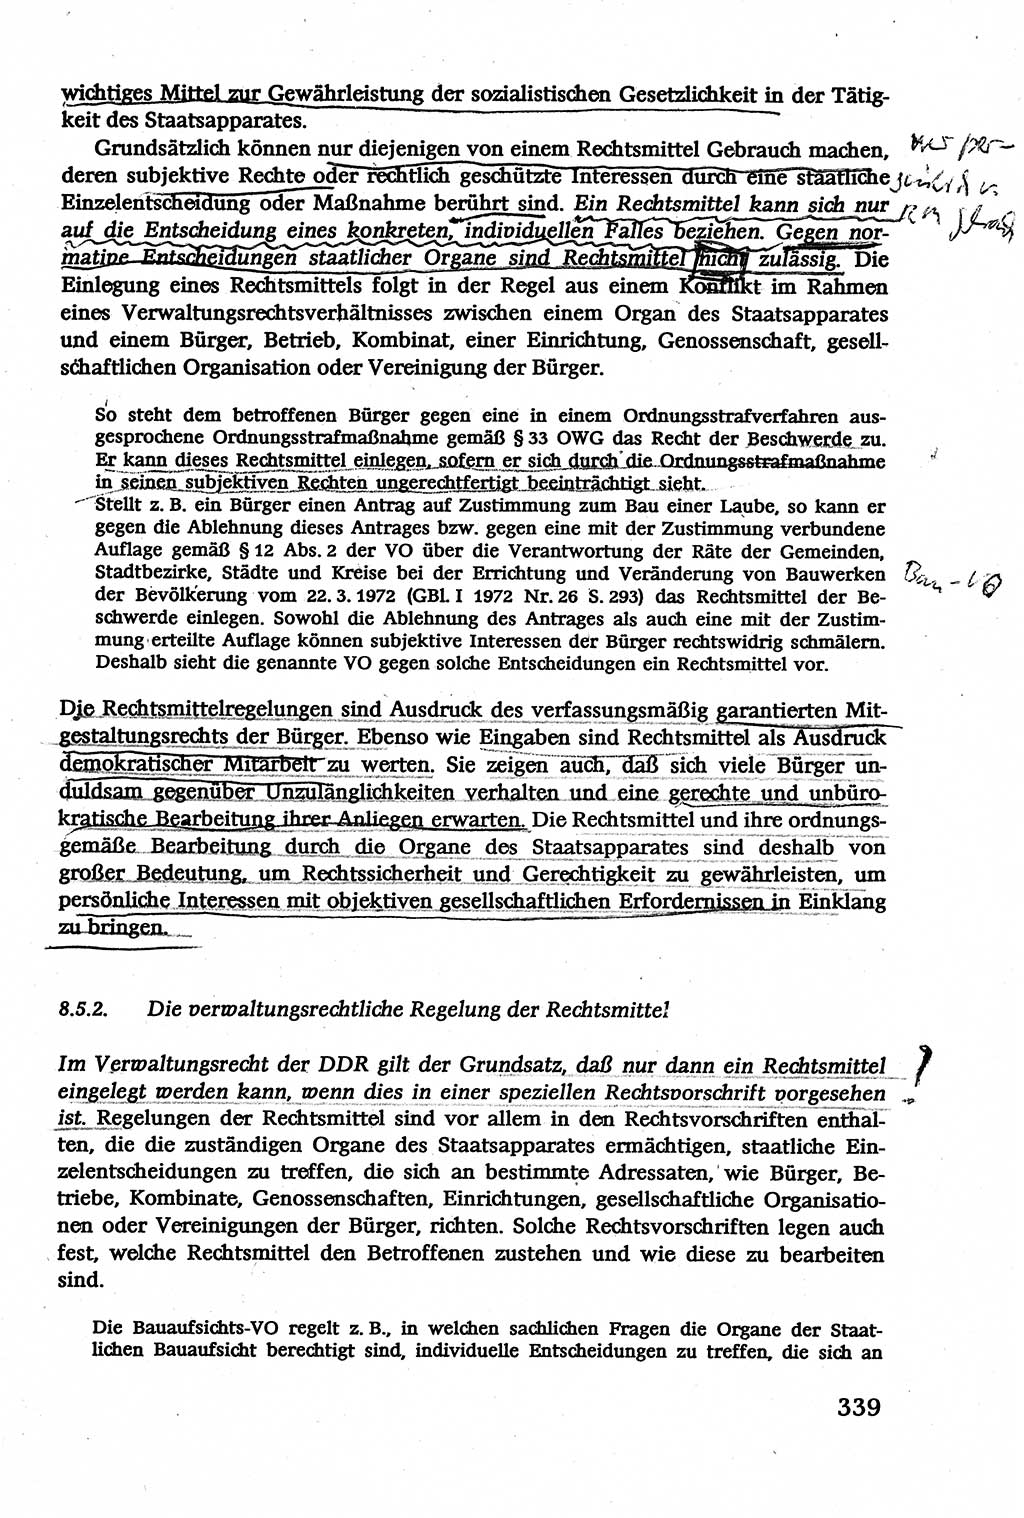 Verwaltungsrecht [Deutsche Demokratische Republik (DDR)], Lehrbuch 1979, Seite 339 (Verw.-R. DDR Lb. 1979, S. 339)